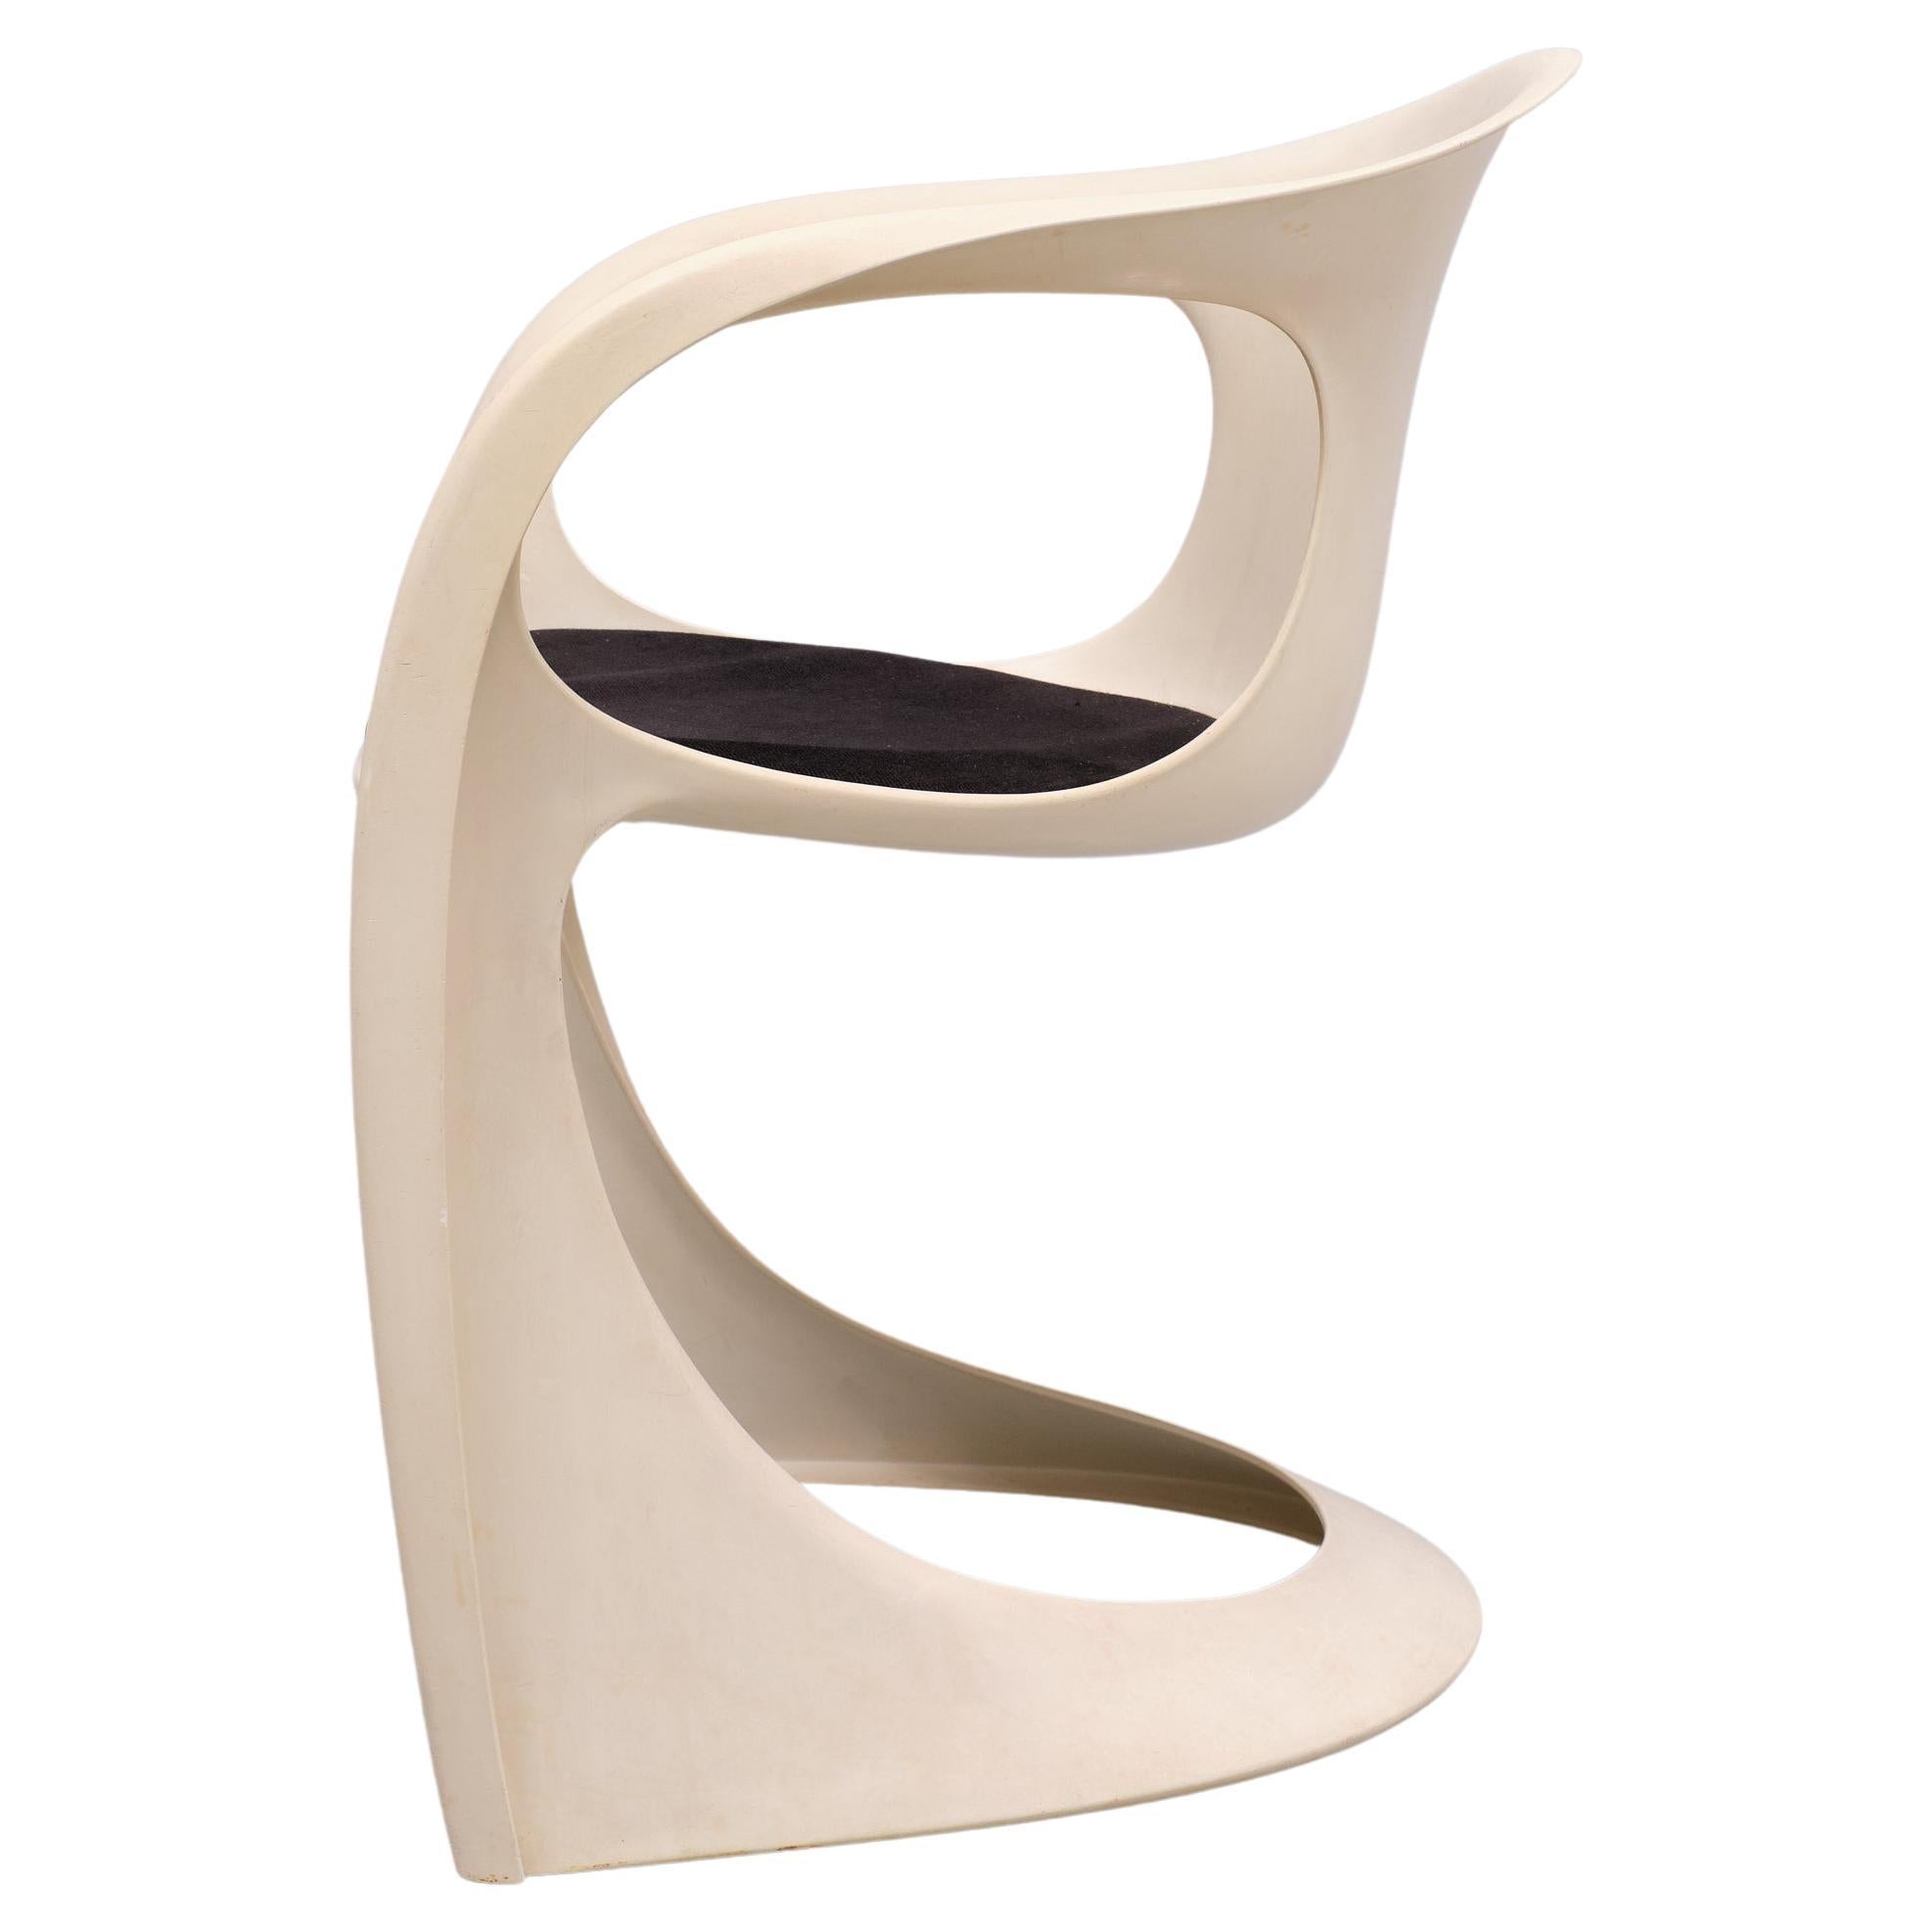  Casalino Fiberglas  Stuhl von Alexander Begge für Casala, 1974.
Dieser Vintage-Sessel, Modell 2007-2008, wurde von Alexander Begge entworfen und um 1974 von Casala hergestellt. Er ist aus Kunststoff gefertigt und mit schwarzem Hopsack gepolstert. 

